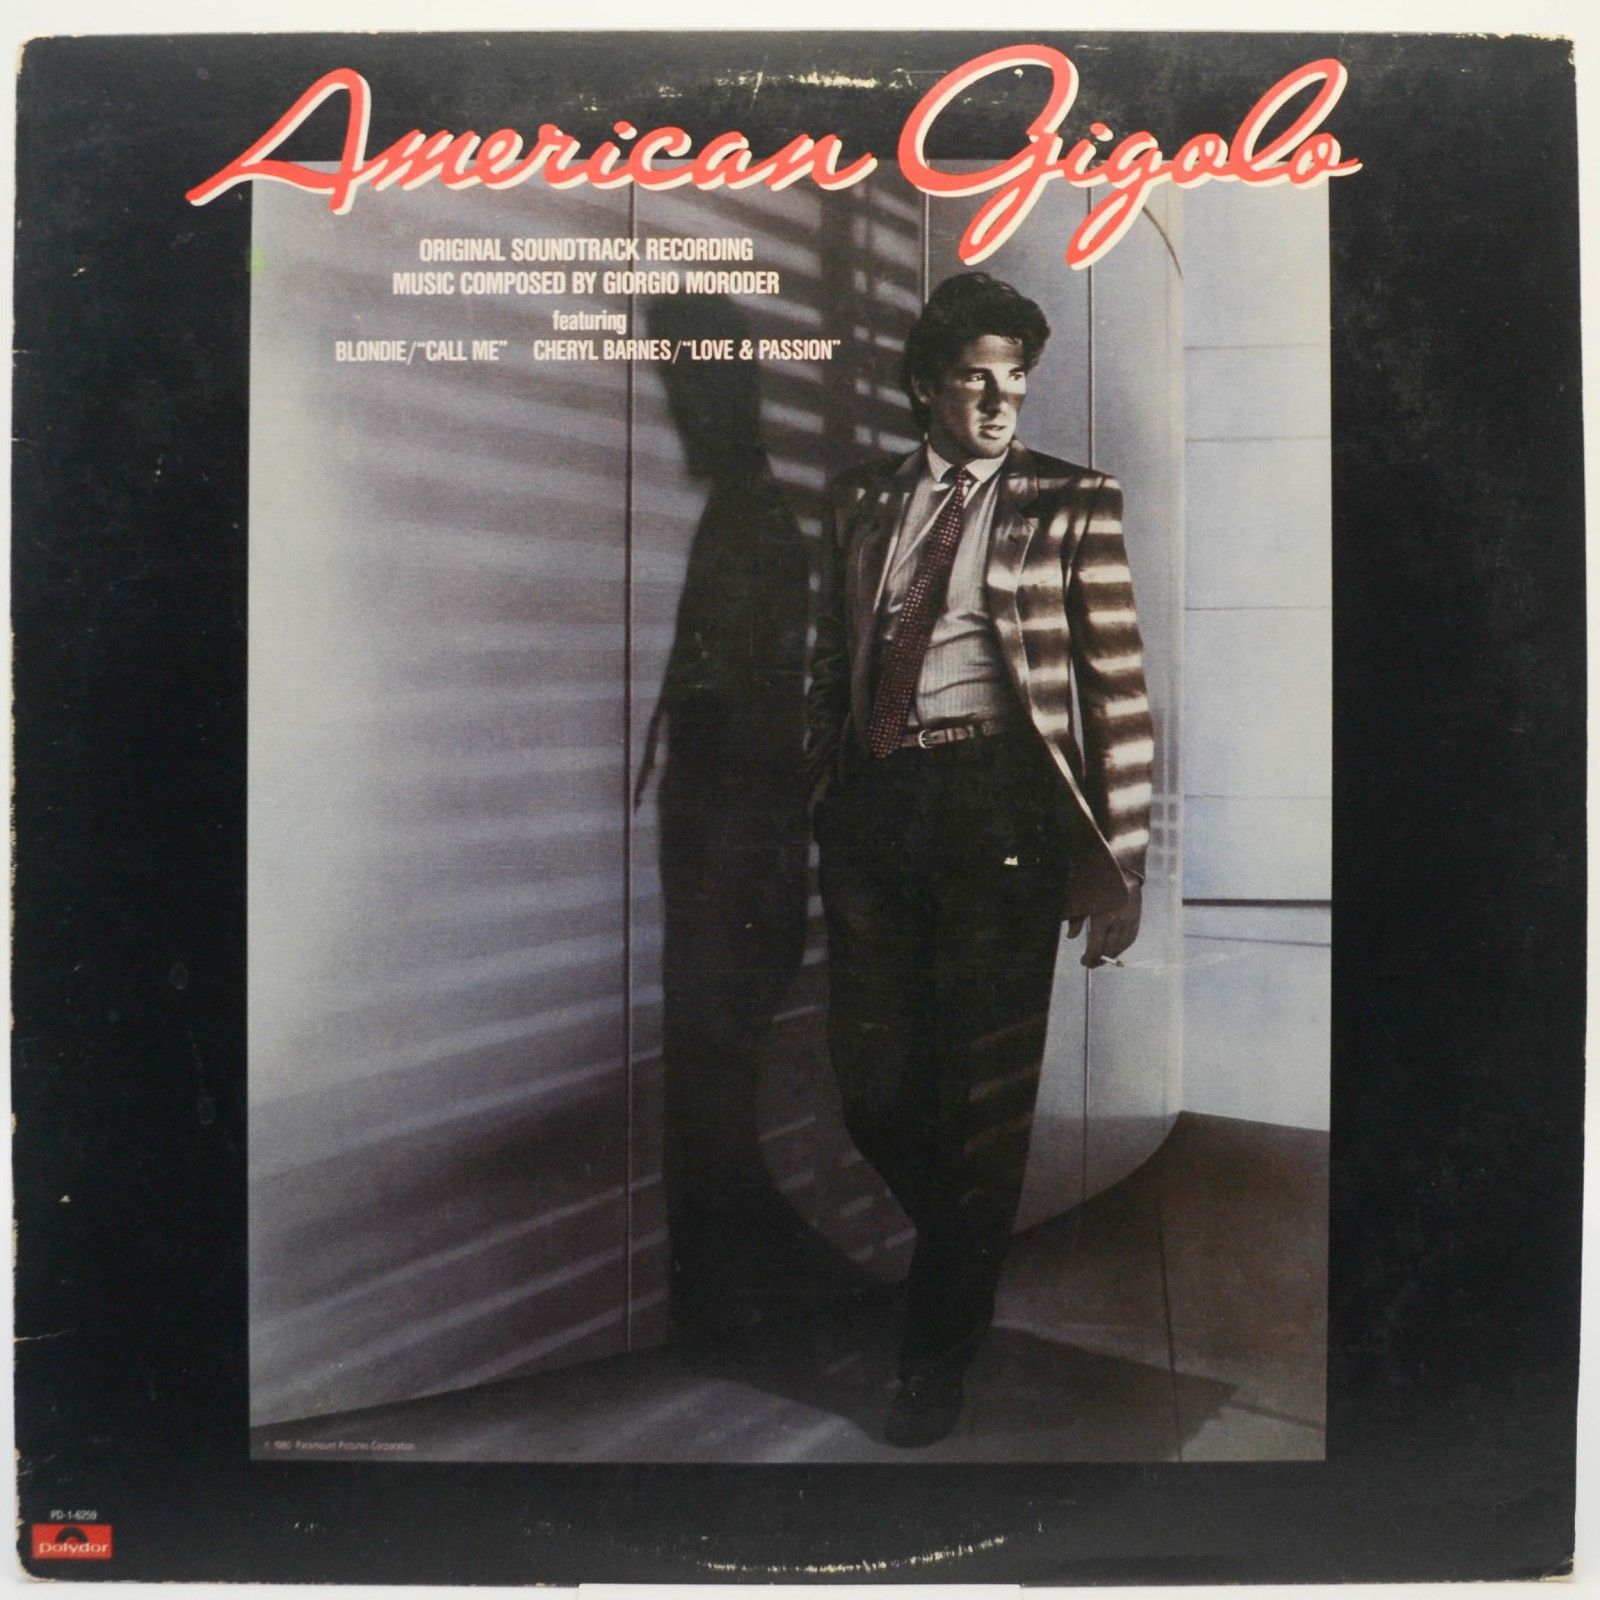 Giorgio Moroder — American Gigolo (Original Soundtrack Recording) (USA), 1980